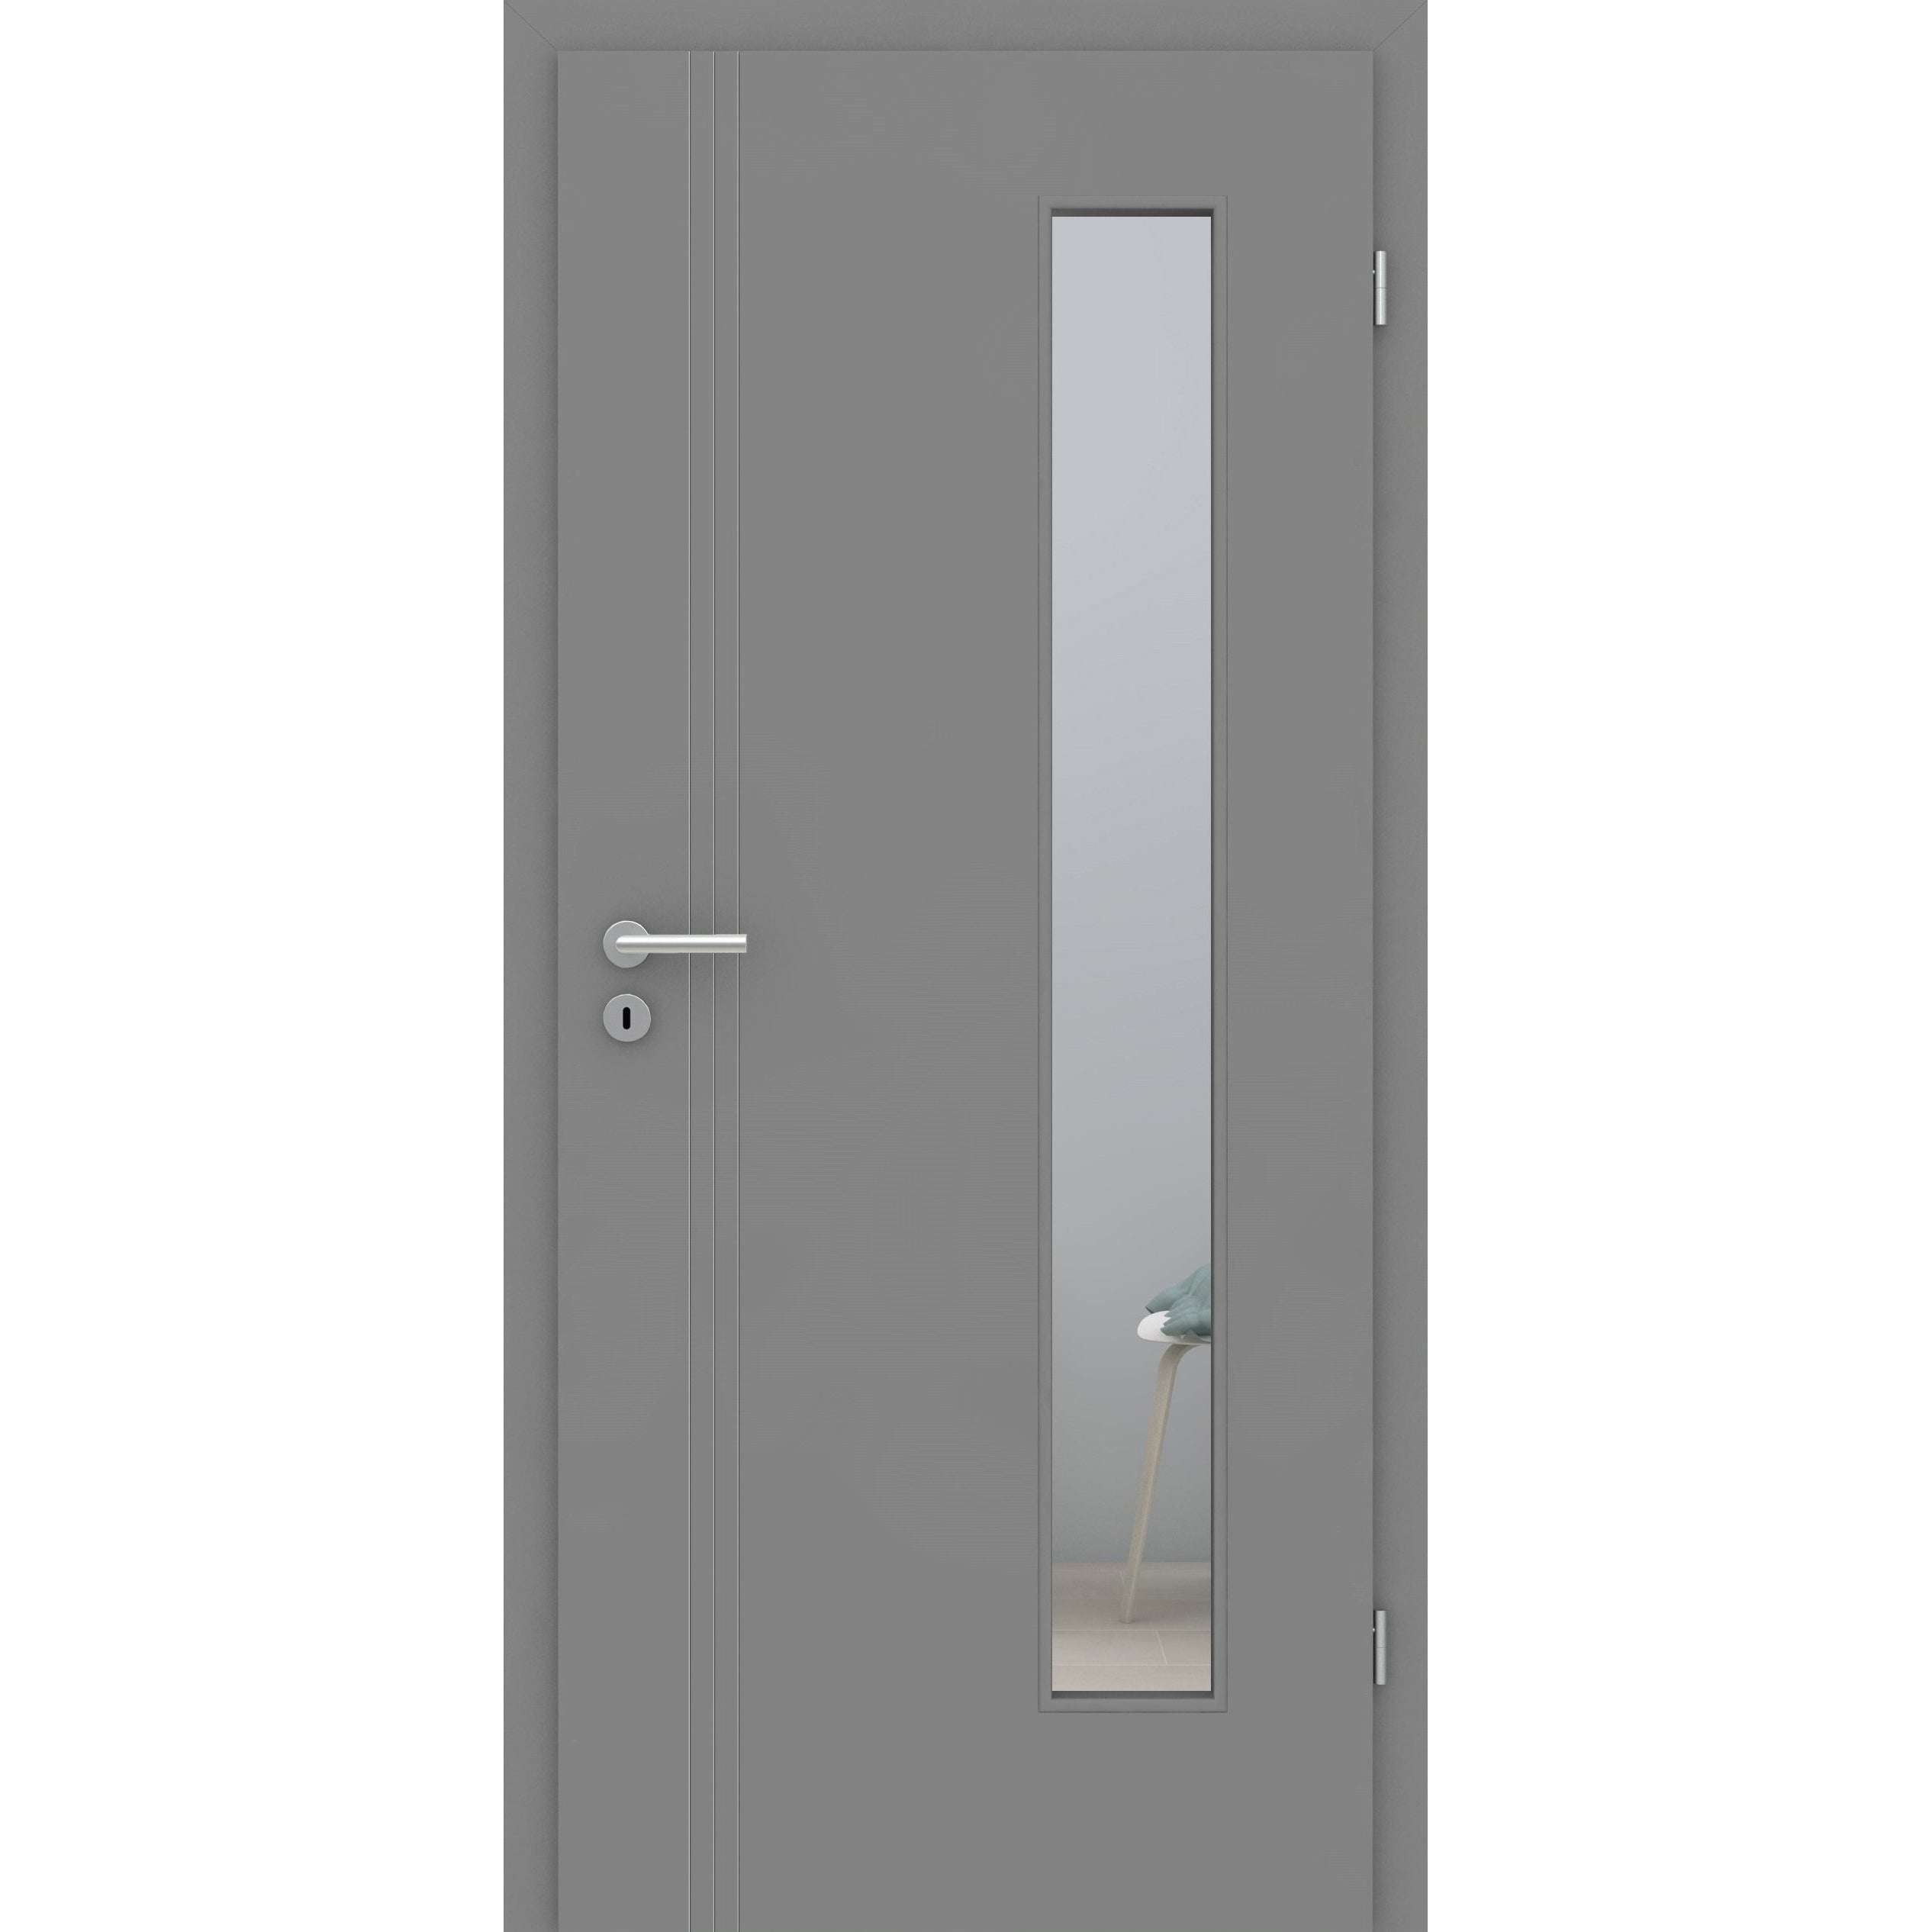 Zimmertür mit Lichtausschnitt grau 3 Rillen aufrecht Schlosseite Designkante - Modell Designtür VS37LAB